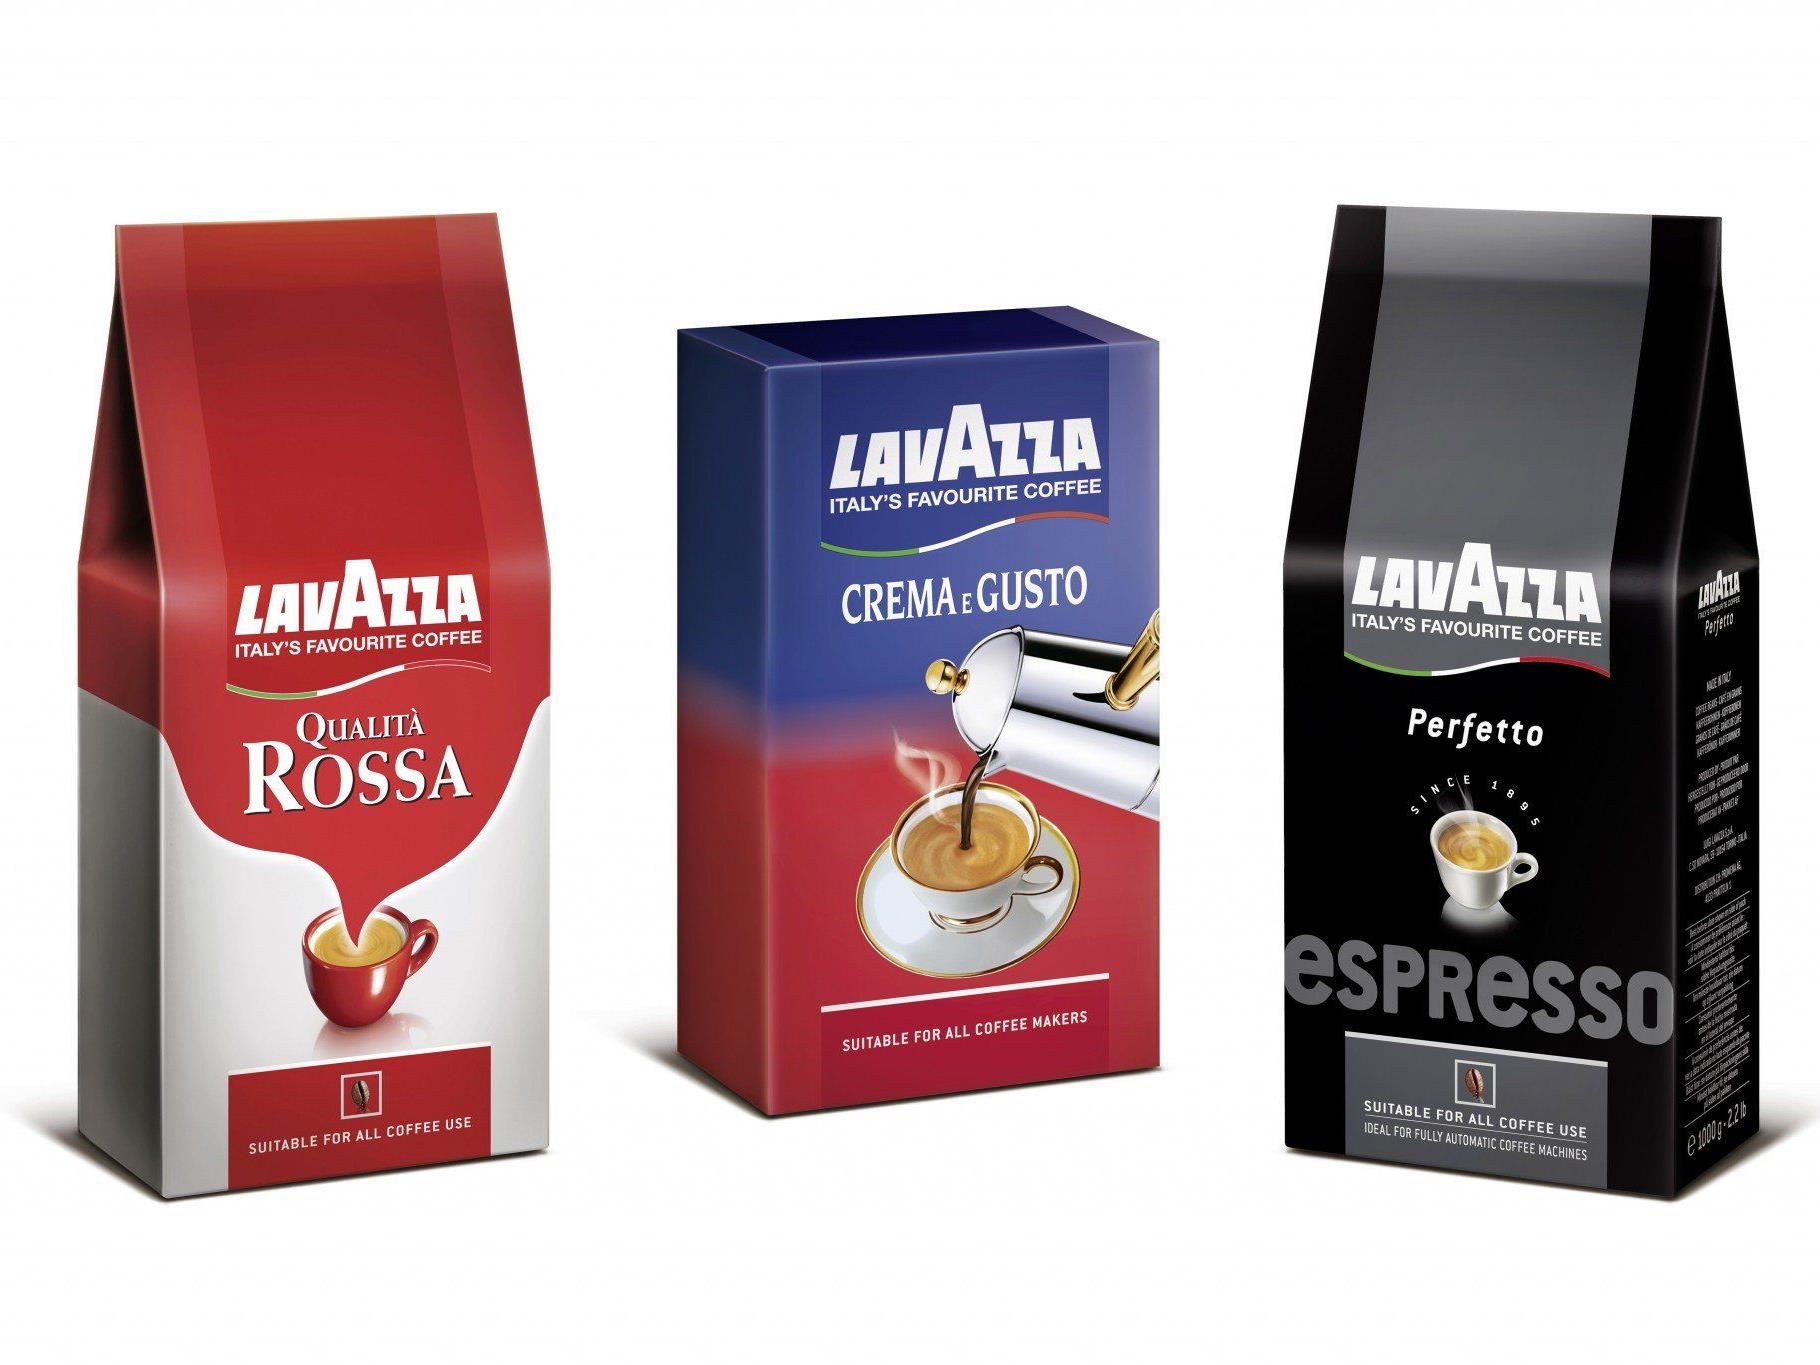 Wir verlosen einen Jahresvorrat Caffé von Lavazza.